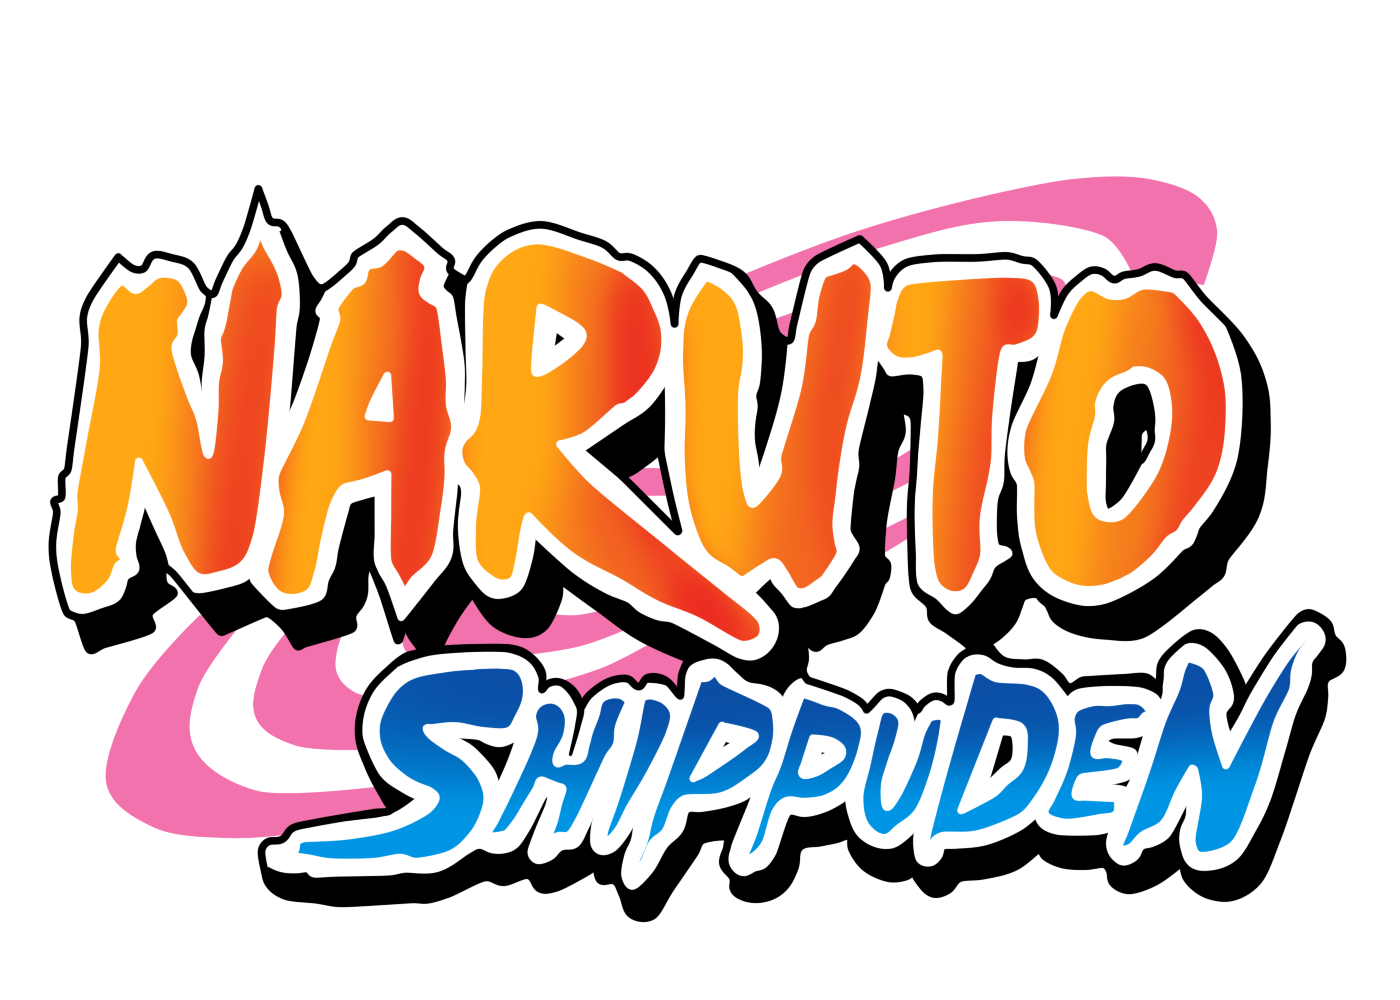 Log in  Naruto, Naruto uzumaki, Naruto shippuden anime